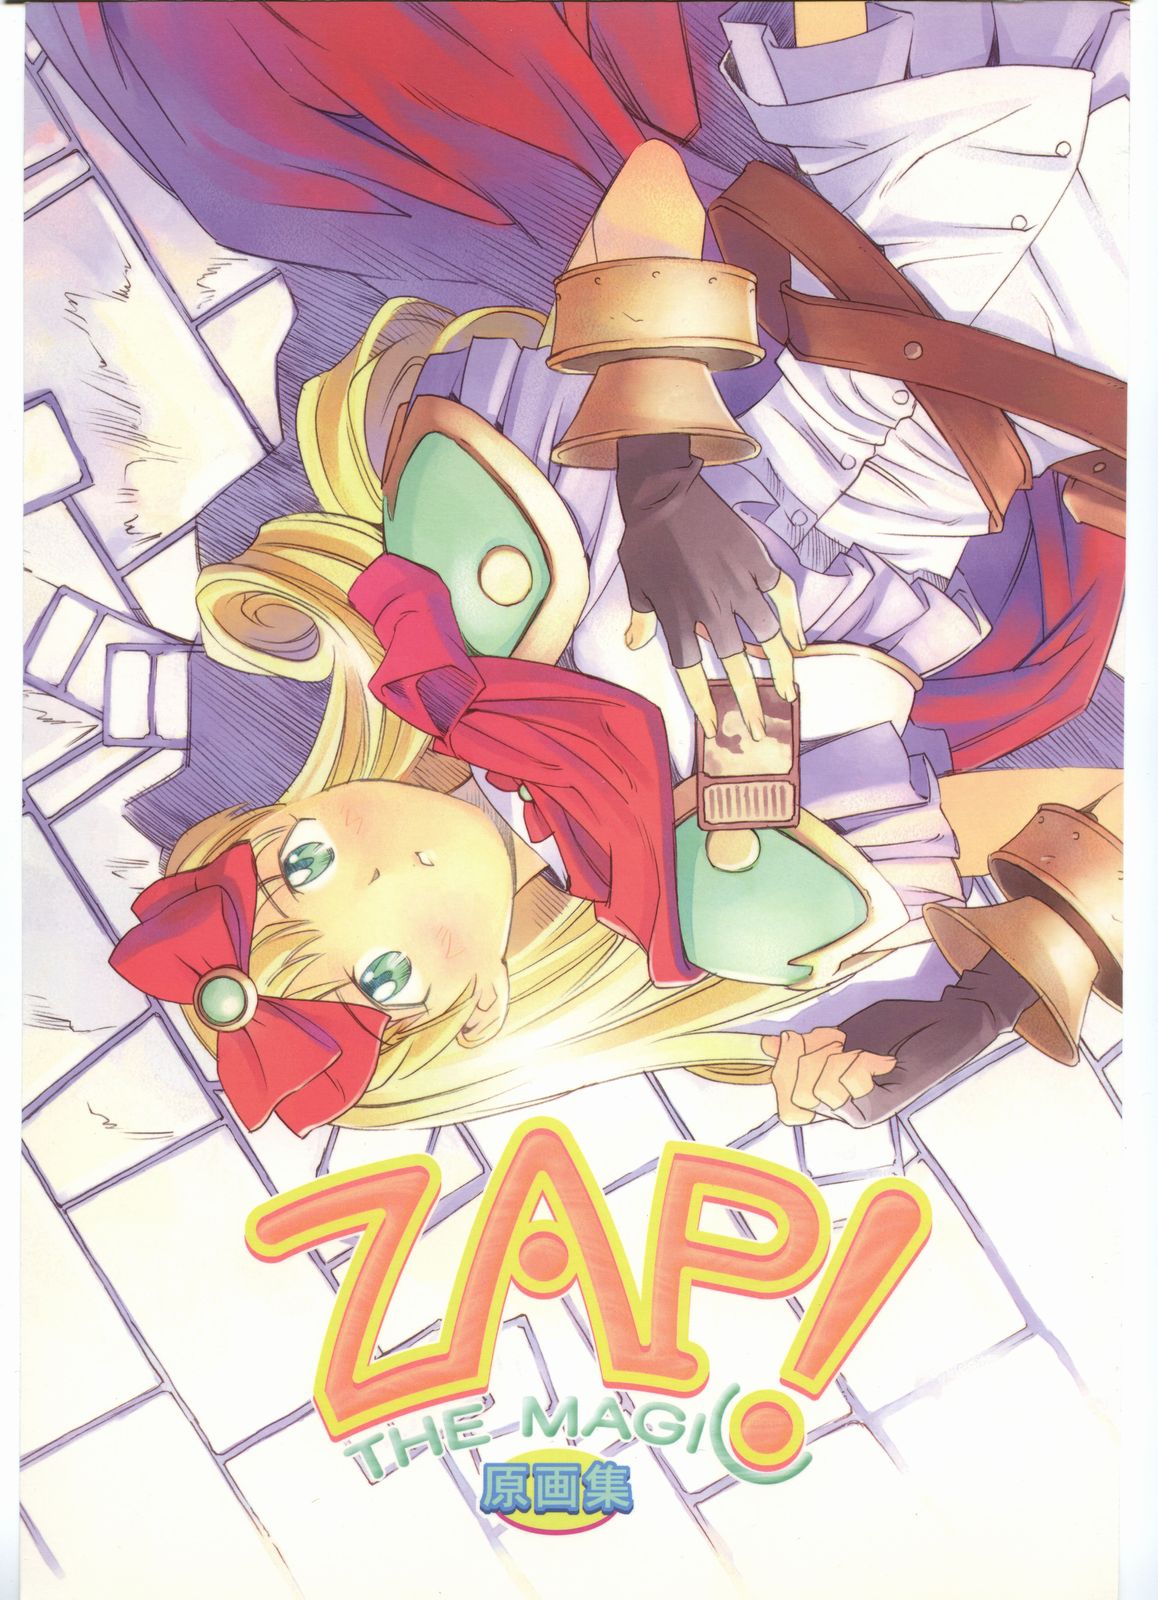 (一般画集) [TOPCAT] 書籍 [ぼうのうと 原画集 サークルぼうのうと] ZAP! THE MAGIC 原画集 (一般画集) [TOPCAT] 書籍 [ぼうのうと 原画集 サークルぼうのうと] ZAP! THE MAGIC 原画集